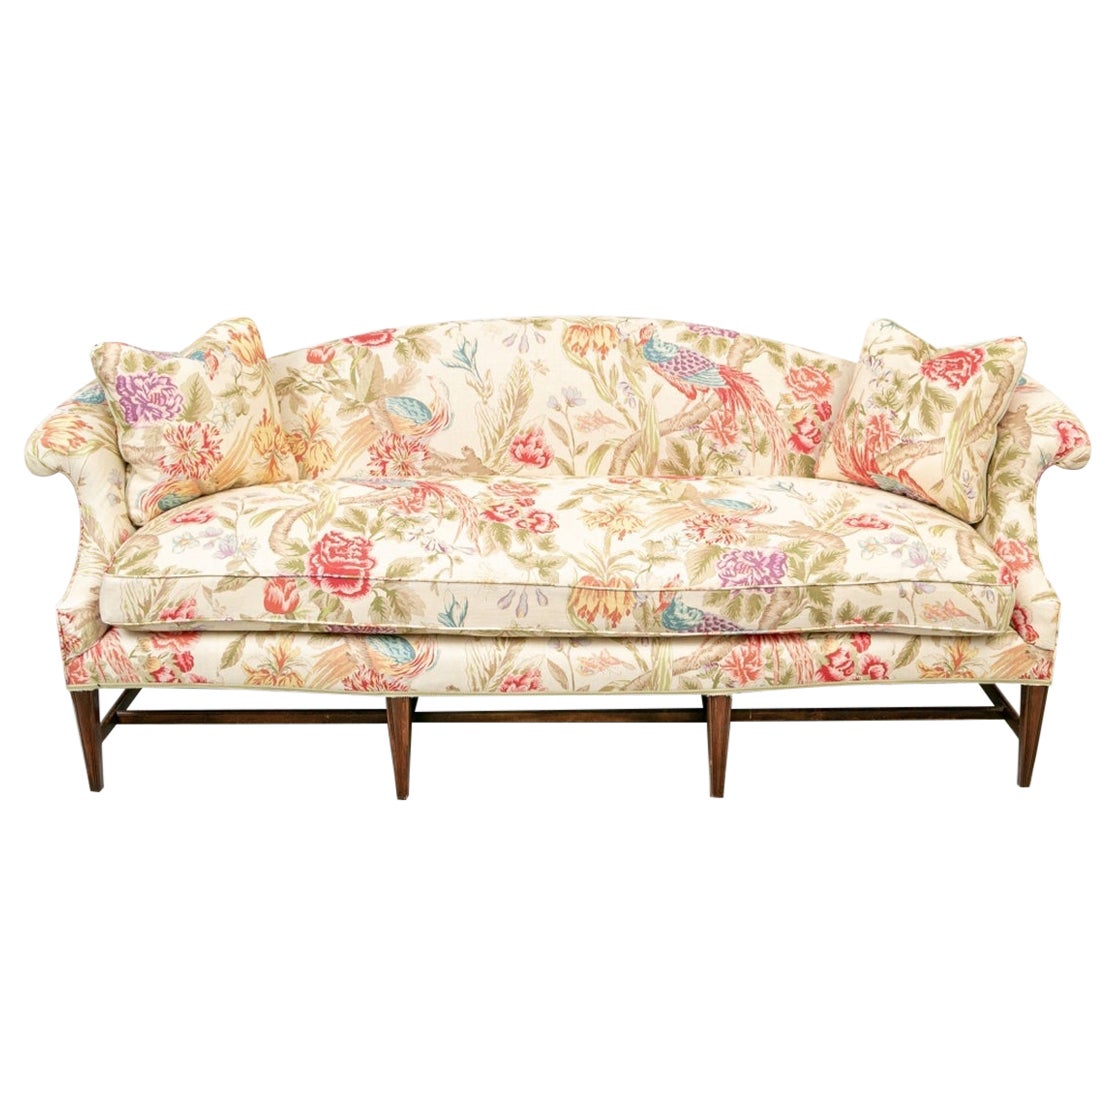 Fine Floral Custom Upholstered Camel Back Sofa For Sale